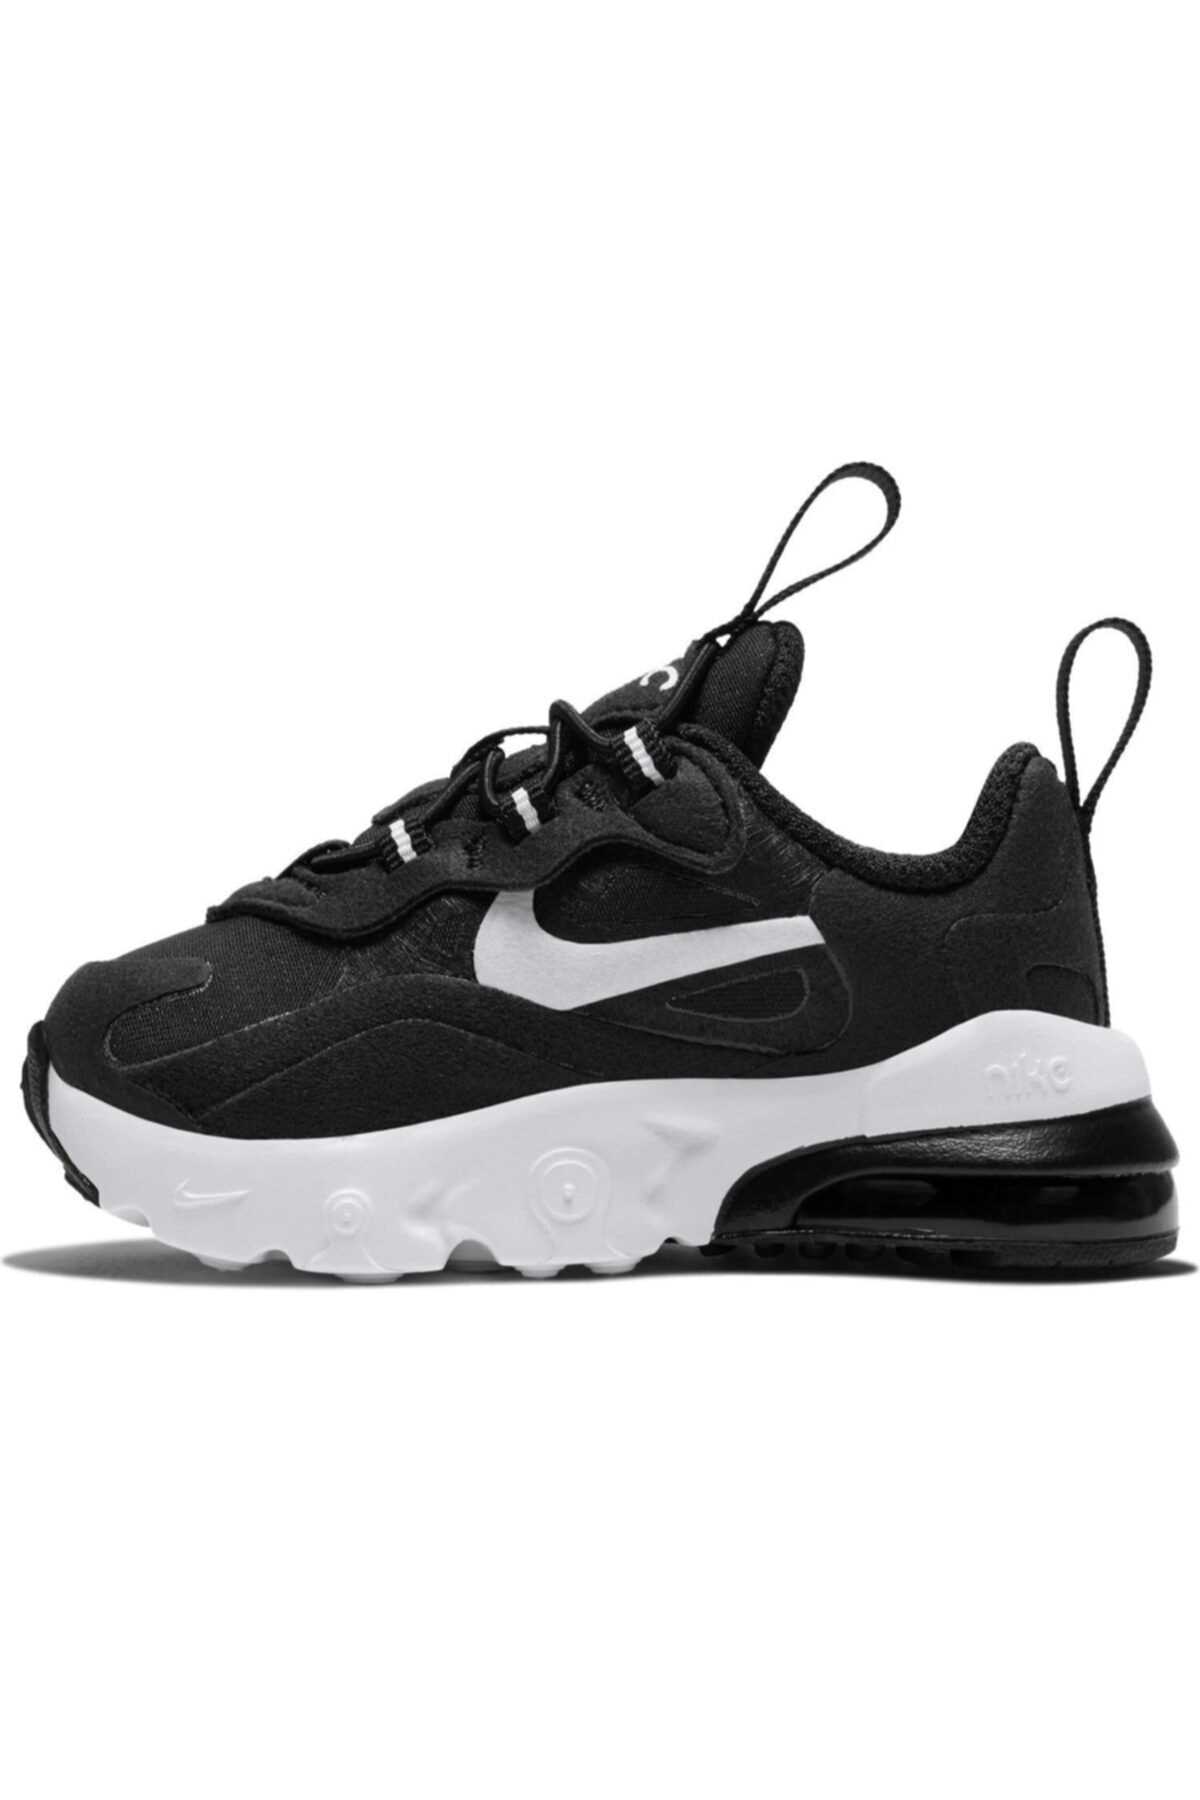 خرید اینترنتی کفش اسپرت بلند مارک Nike رنگ بژ کد ty66941919